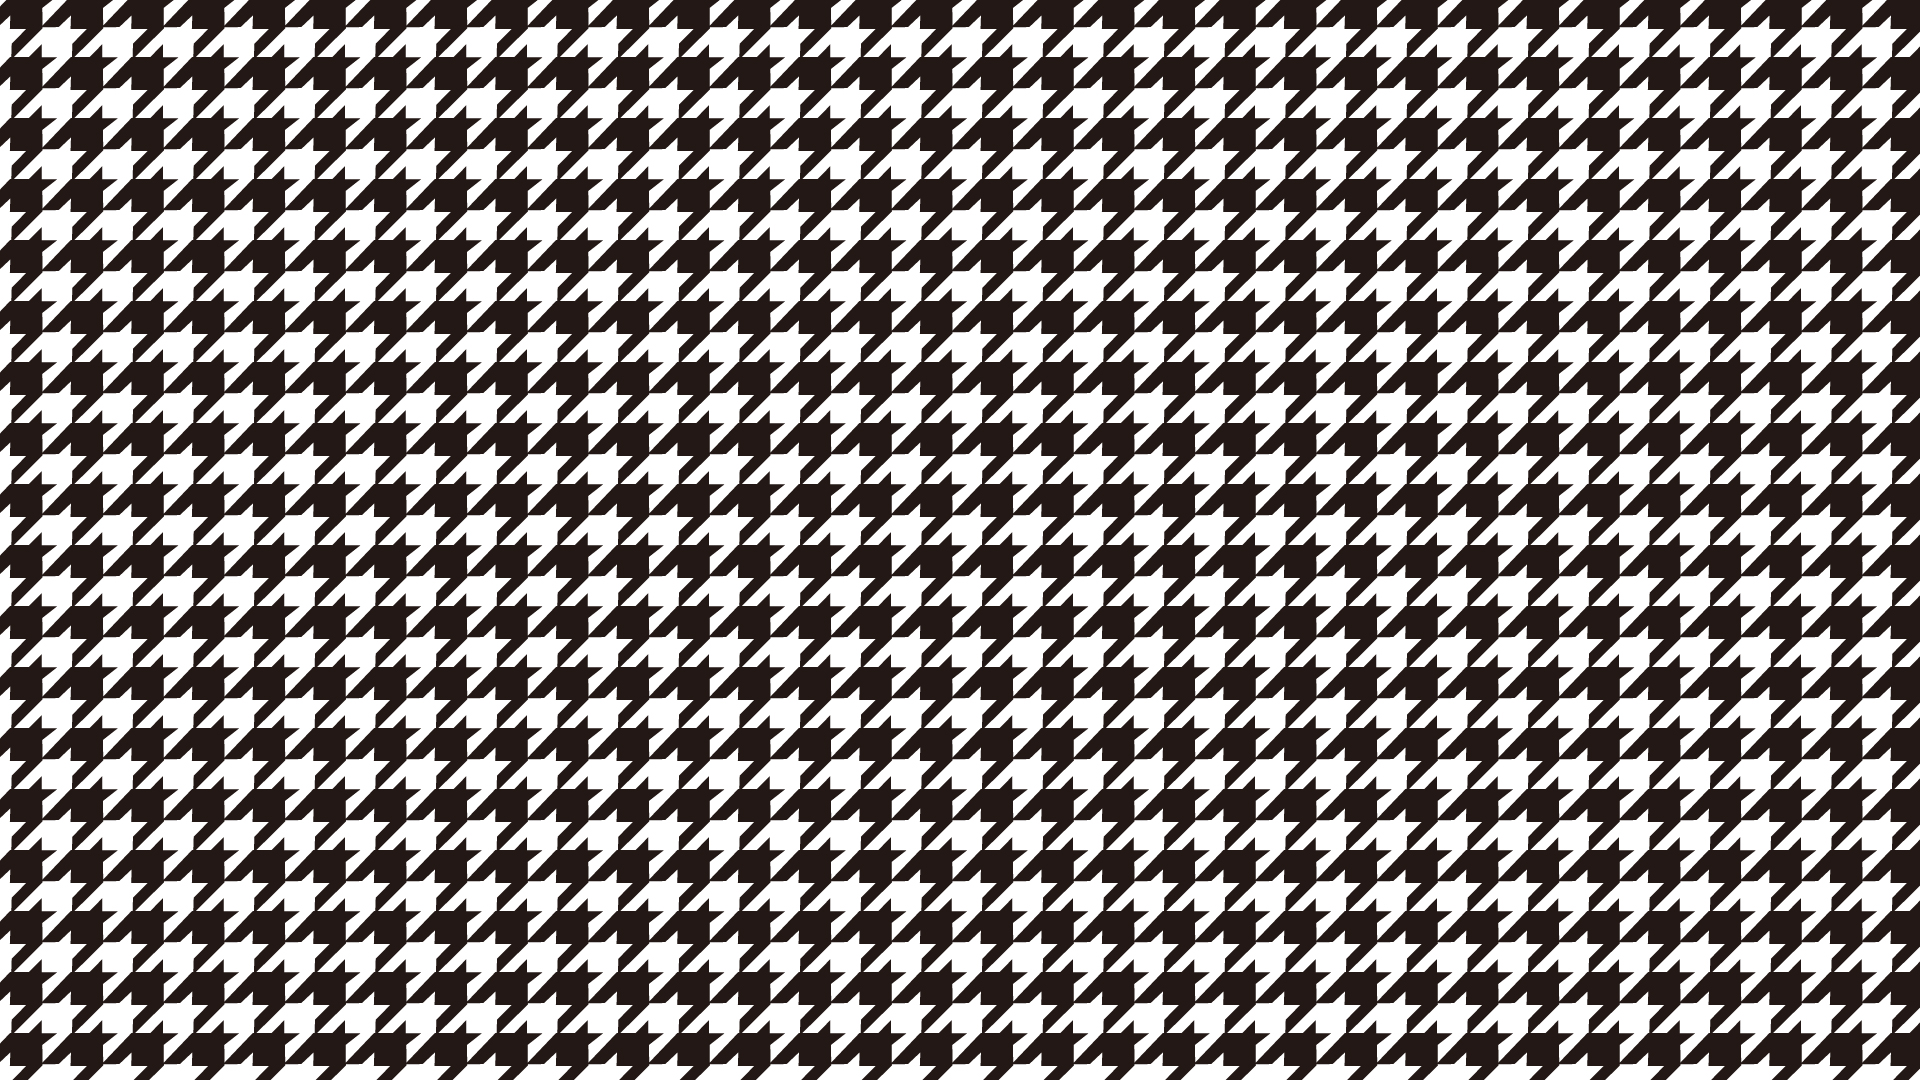 千鳥格子の壁紙・背景素材 1,920px×1,080px